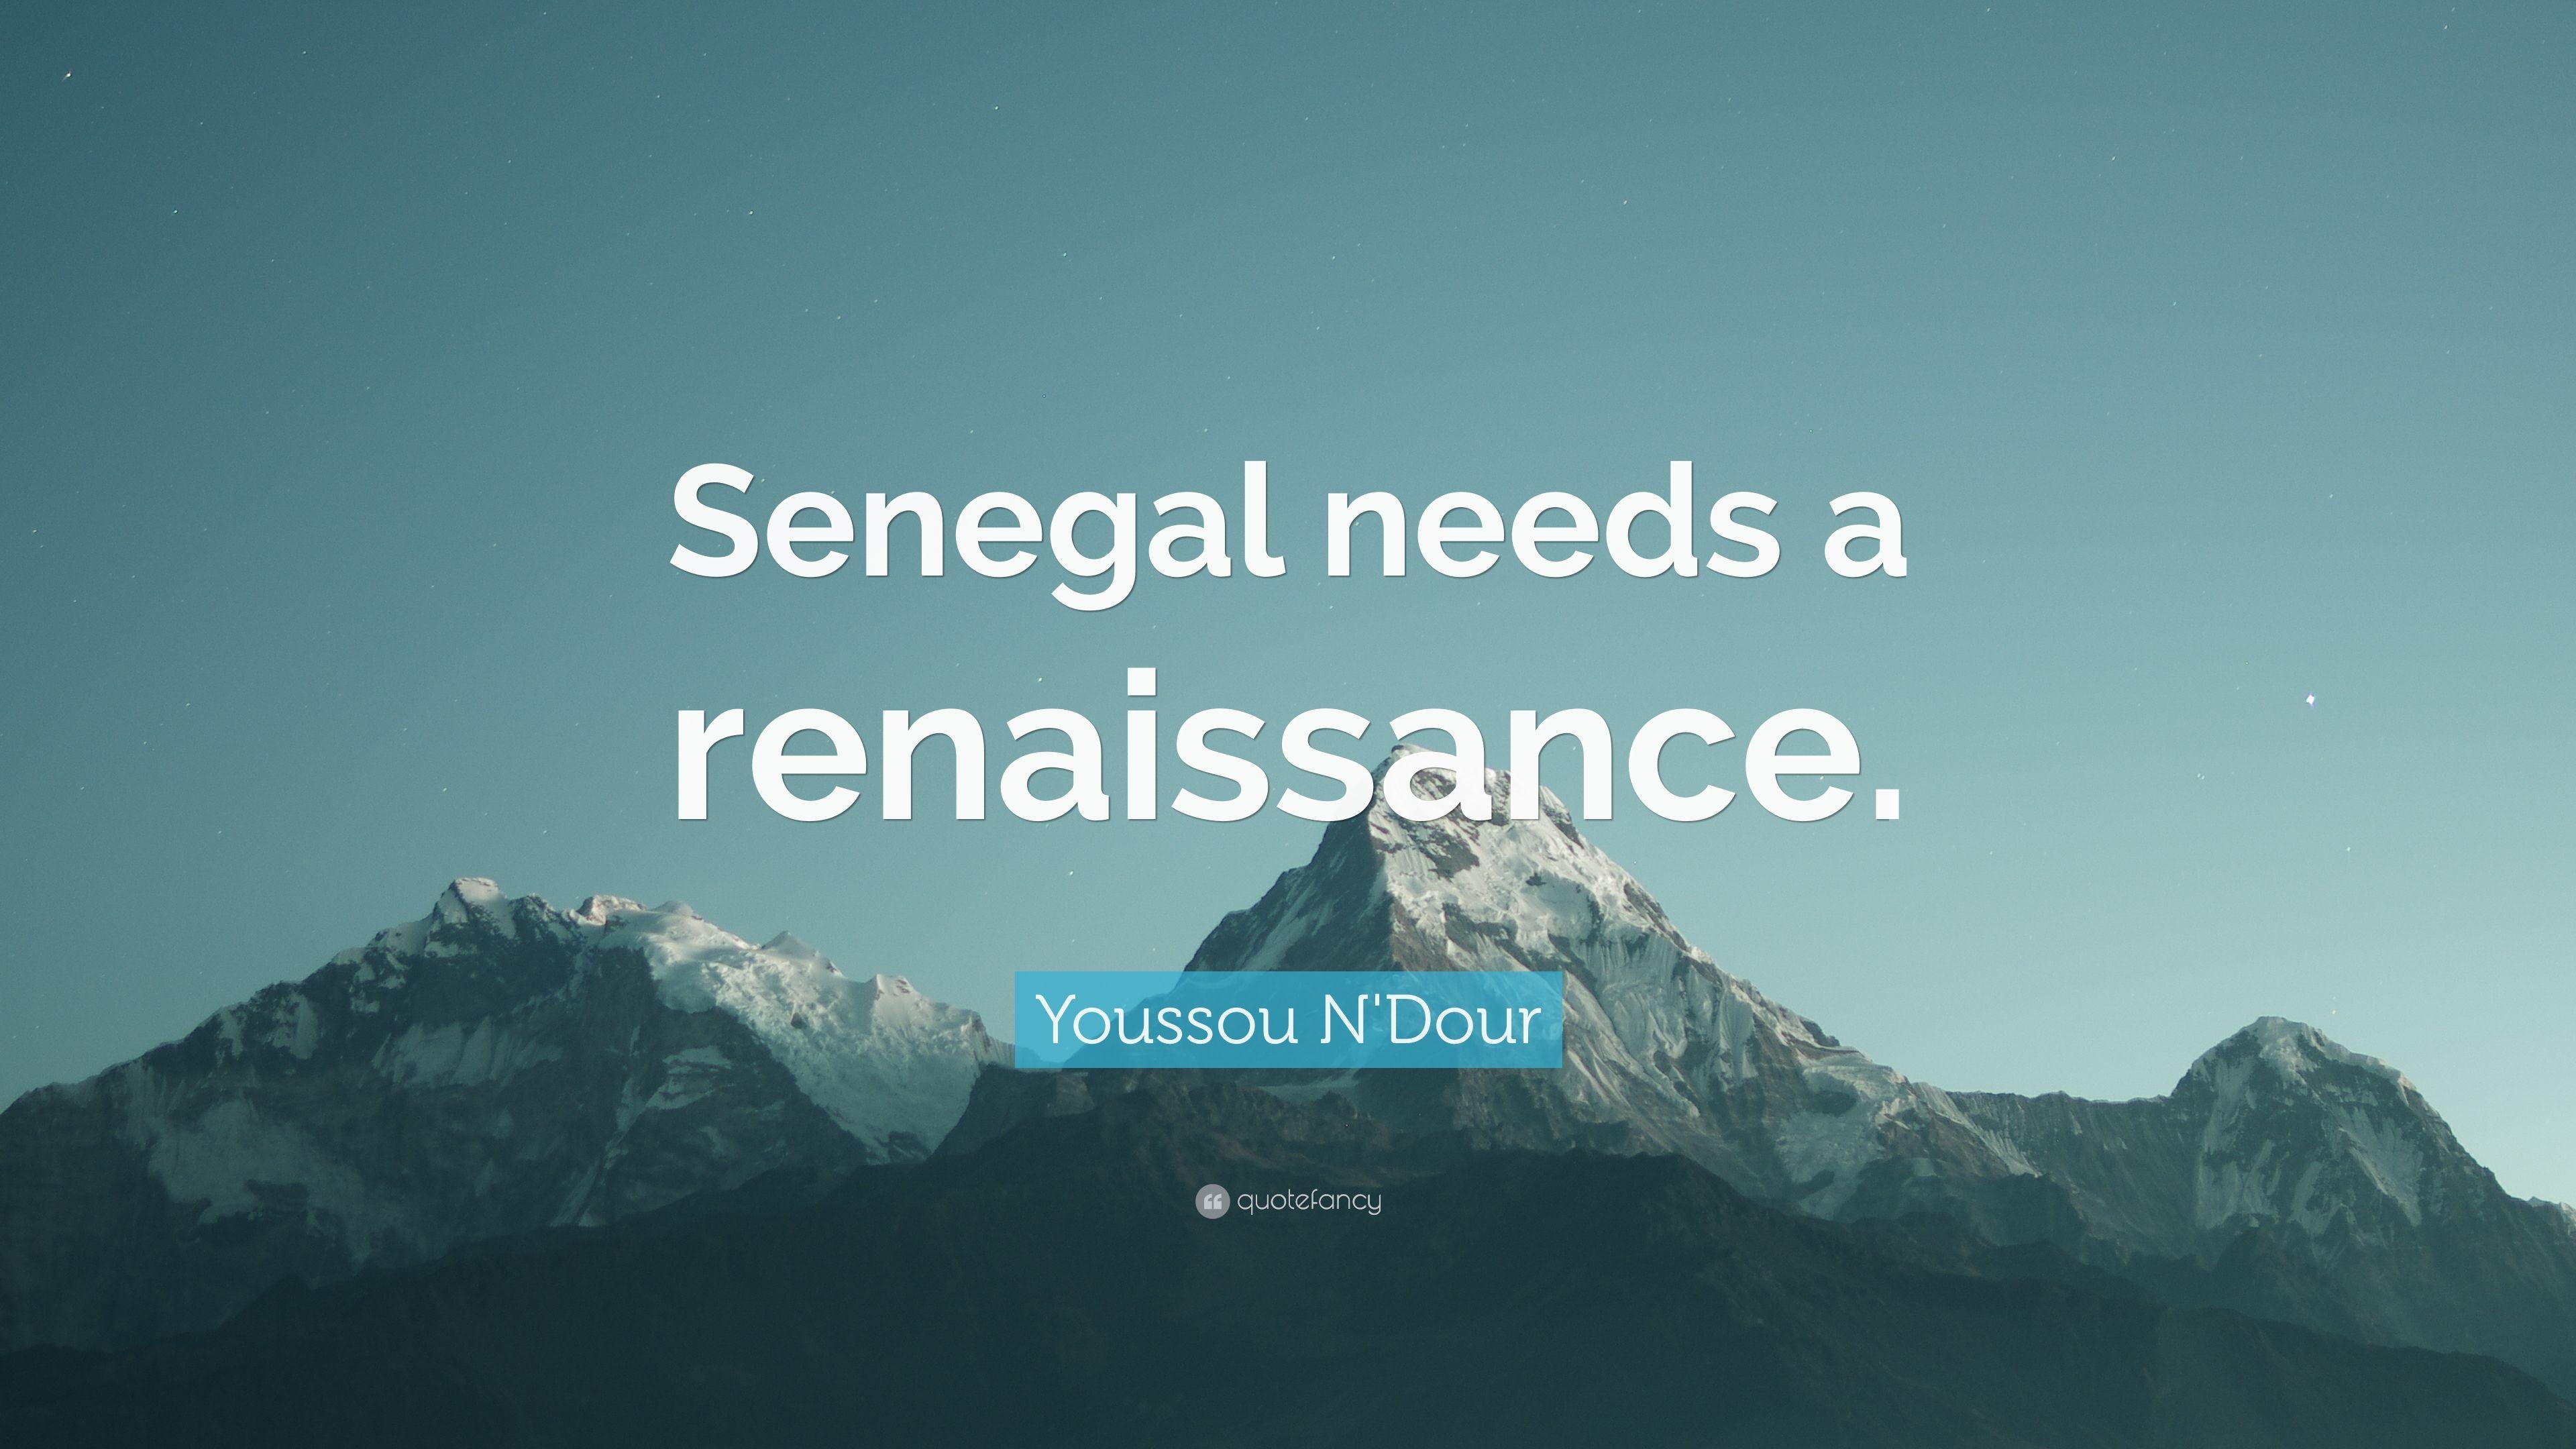 Youssou N'Dour Quote: “Senegal needs a renaissance.” 7 wallpaper